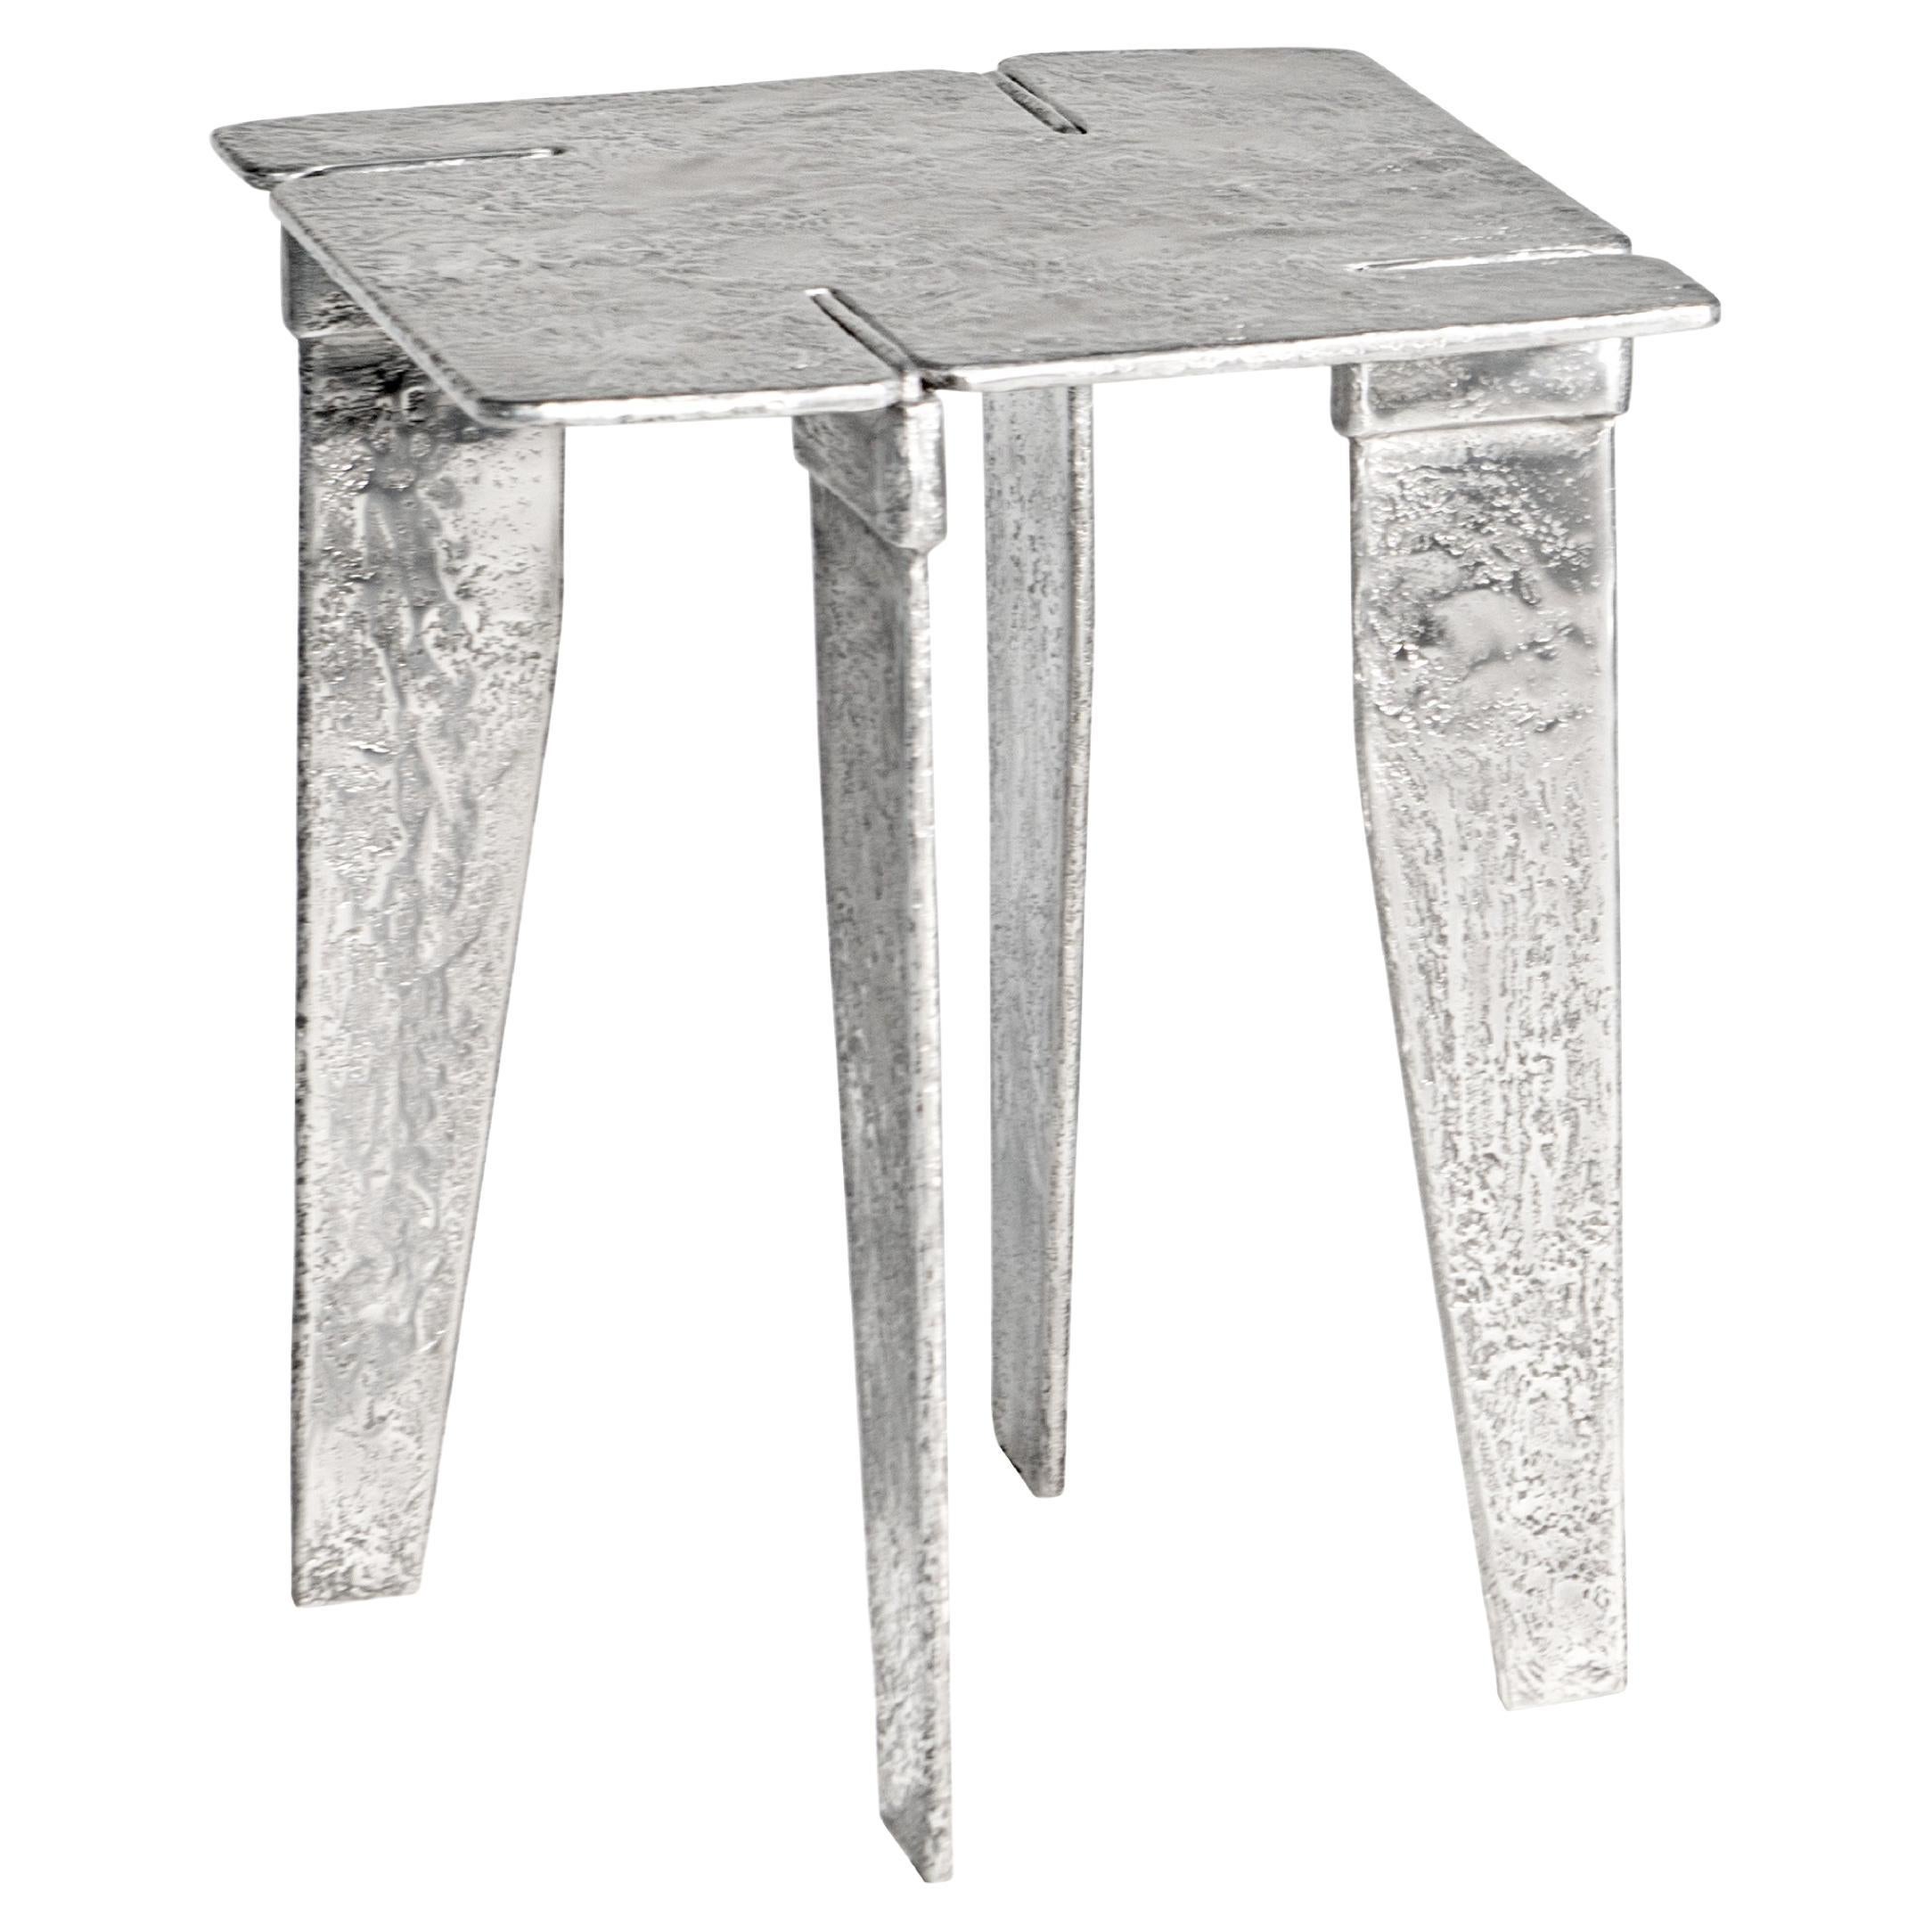 Table d'appoint sculpturale contemporaine par HESSENTIA en fonte d'aluminium, métal véritable.